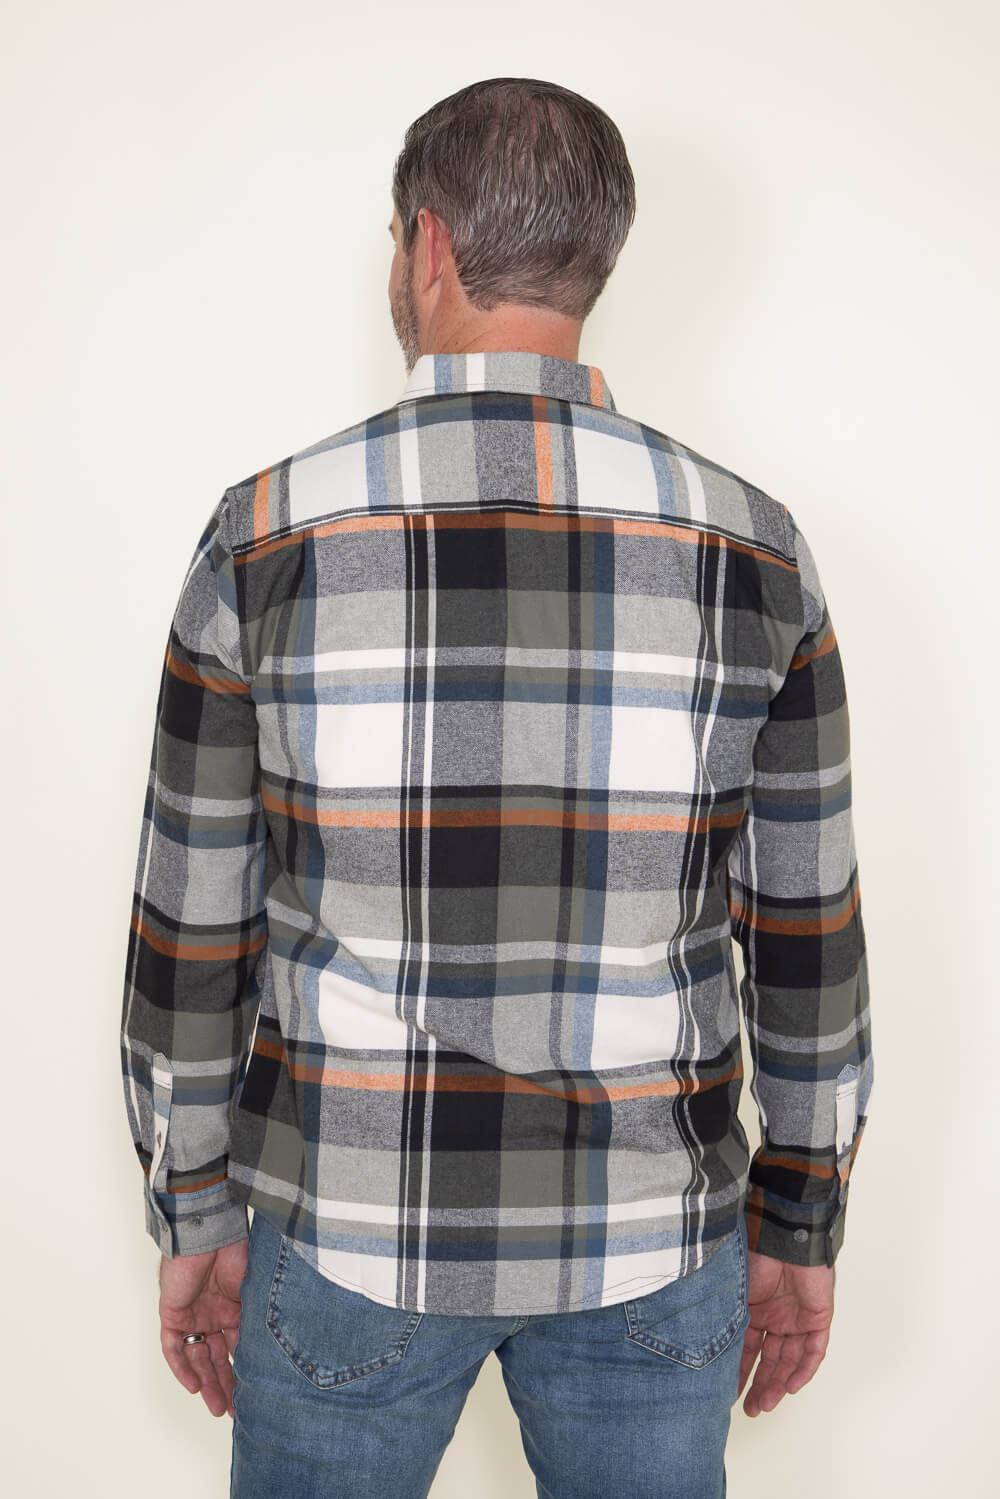 Weatherproof Vintage Flannel Shirt for Men in Orange at Glik's , L